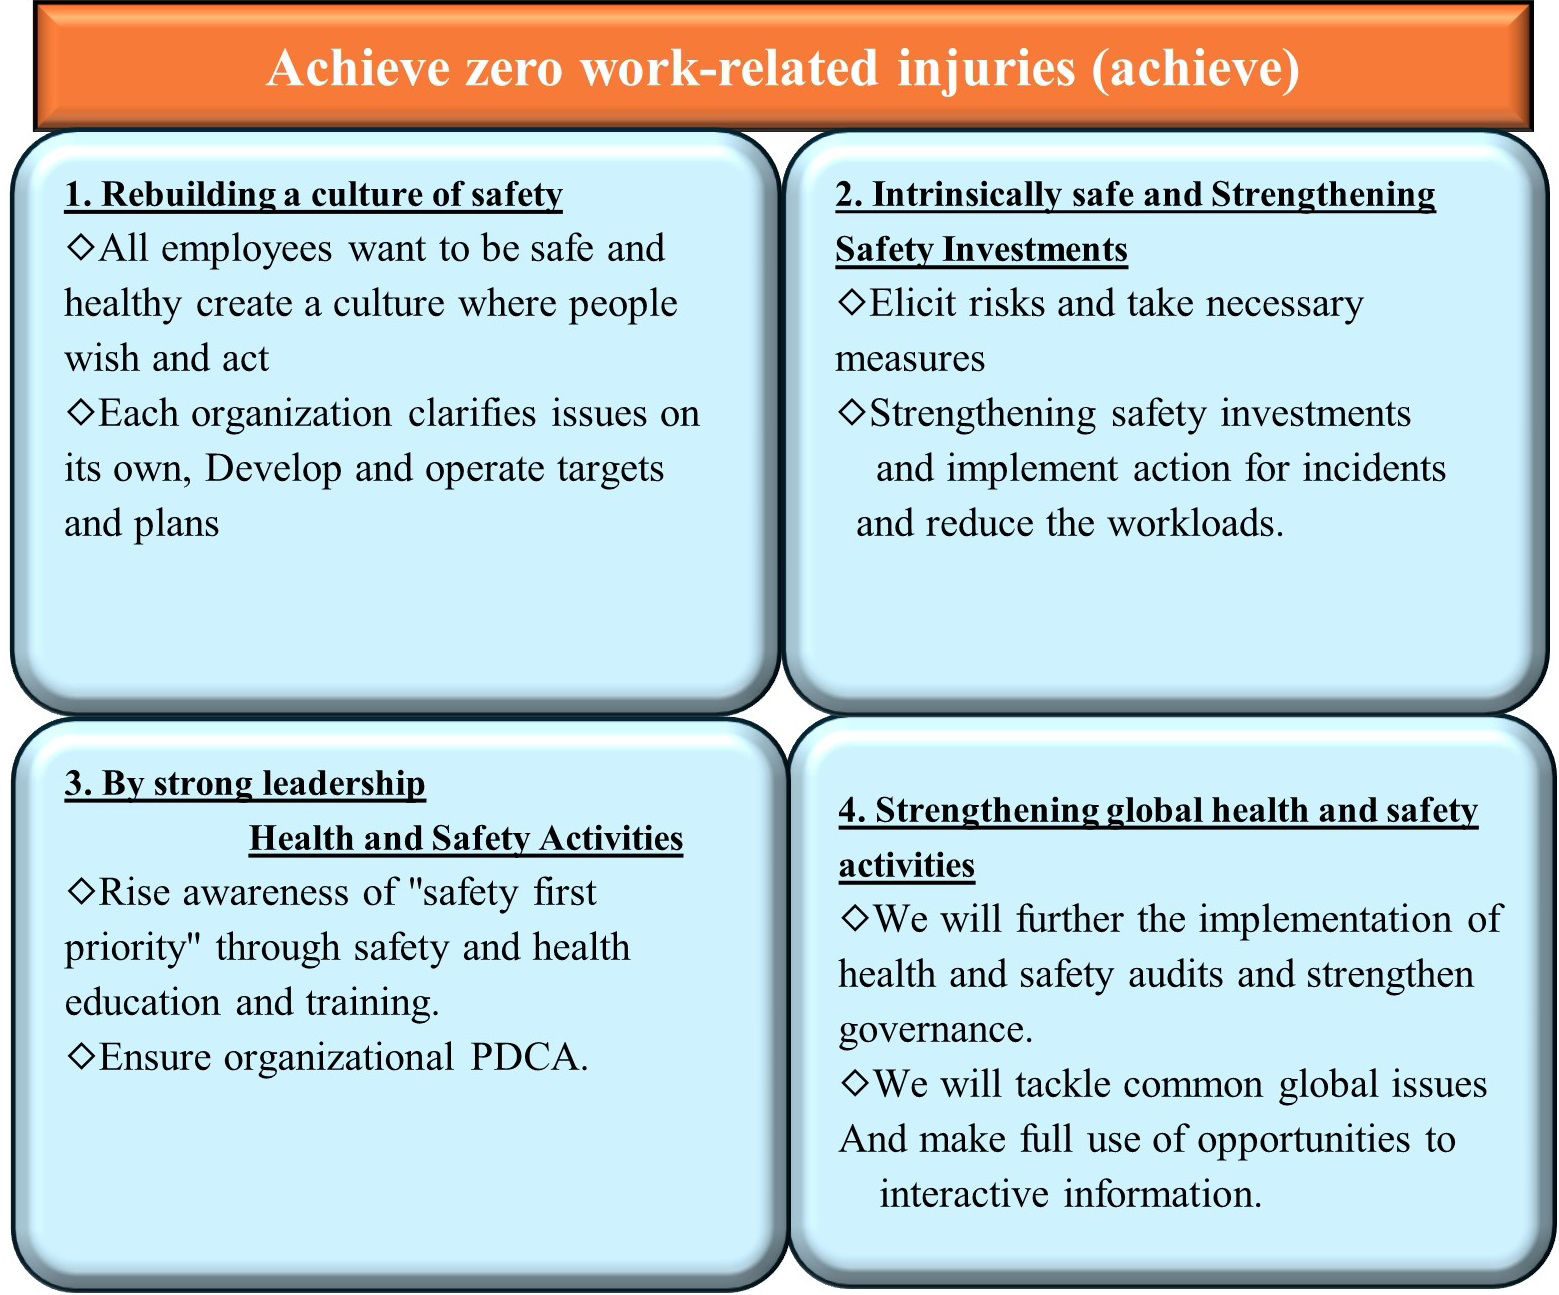 Achieve zero work-related injuries